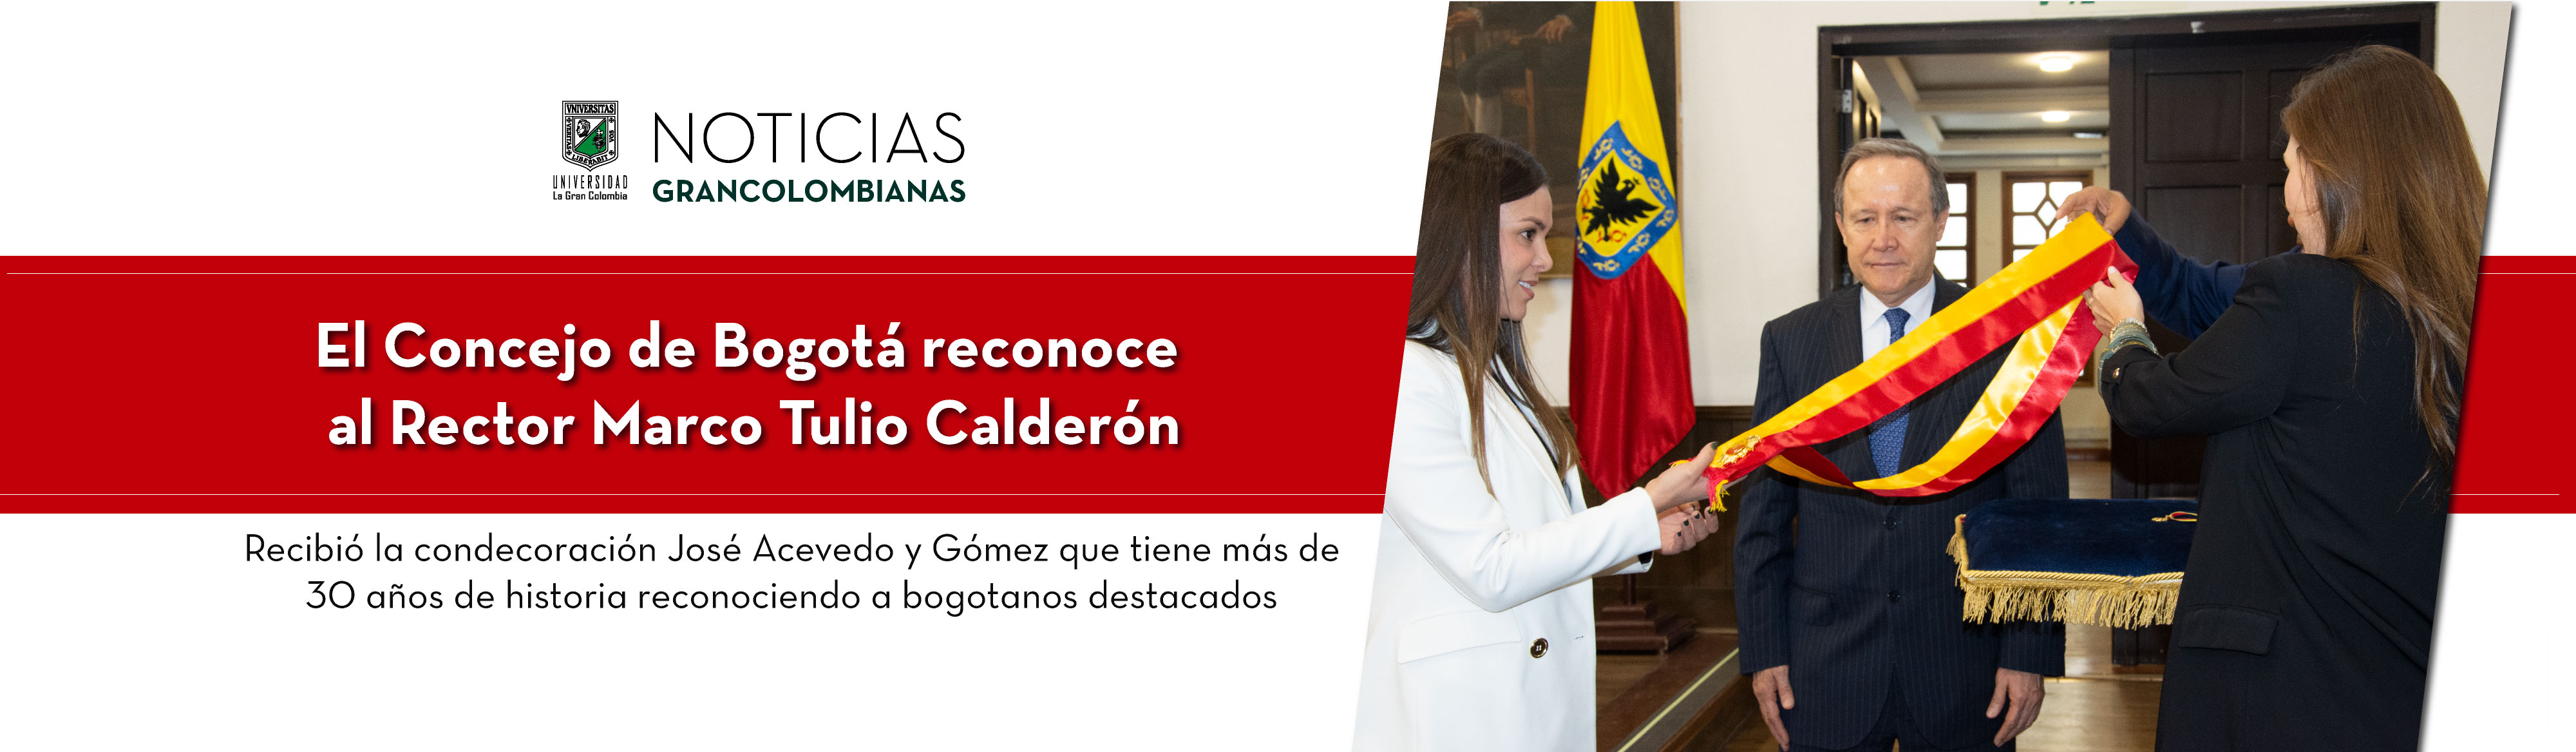 El Concejo de Bogotá reconoce al Rector Marco Tulio Calderón